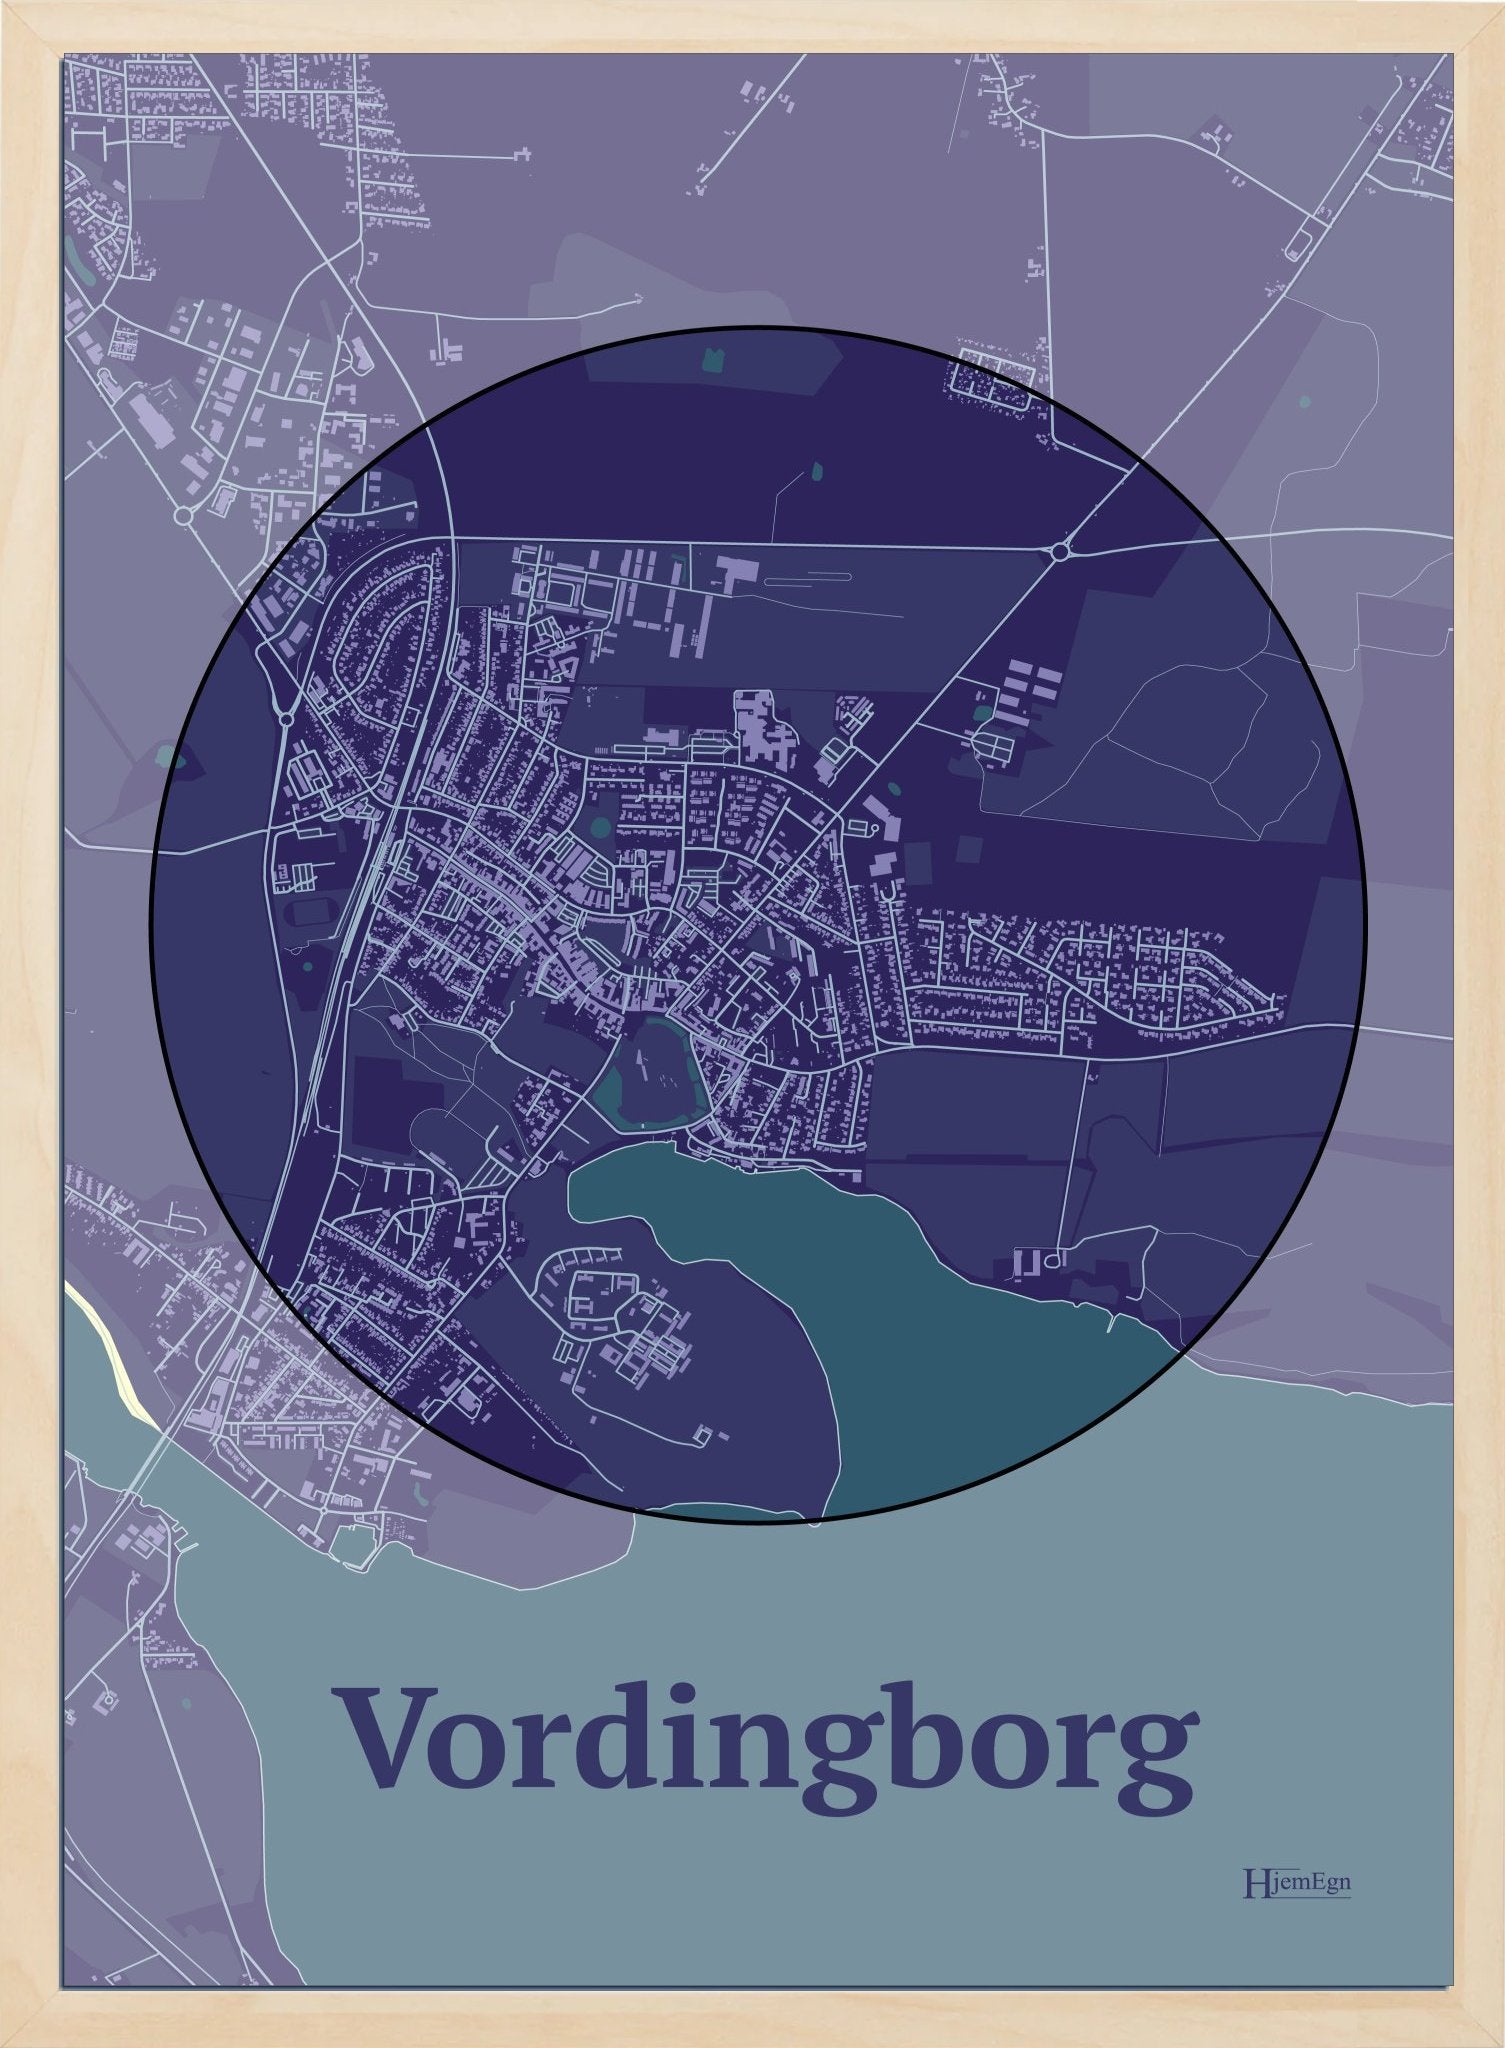 Vordingborg plakat i farve mørk lilla og HjemEgn.dk design centrum. Design bykort for Vordingborg